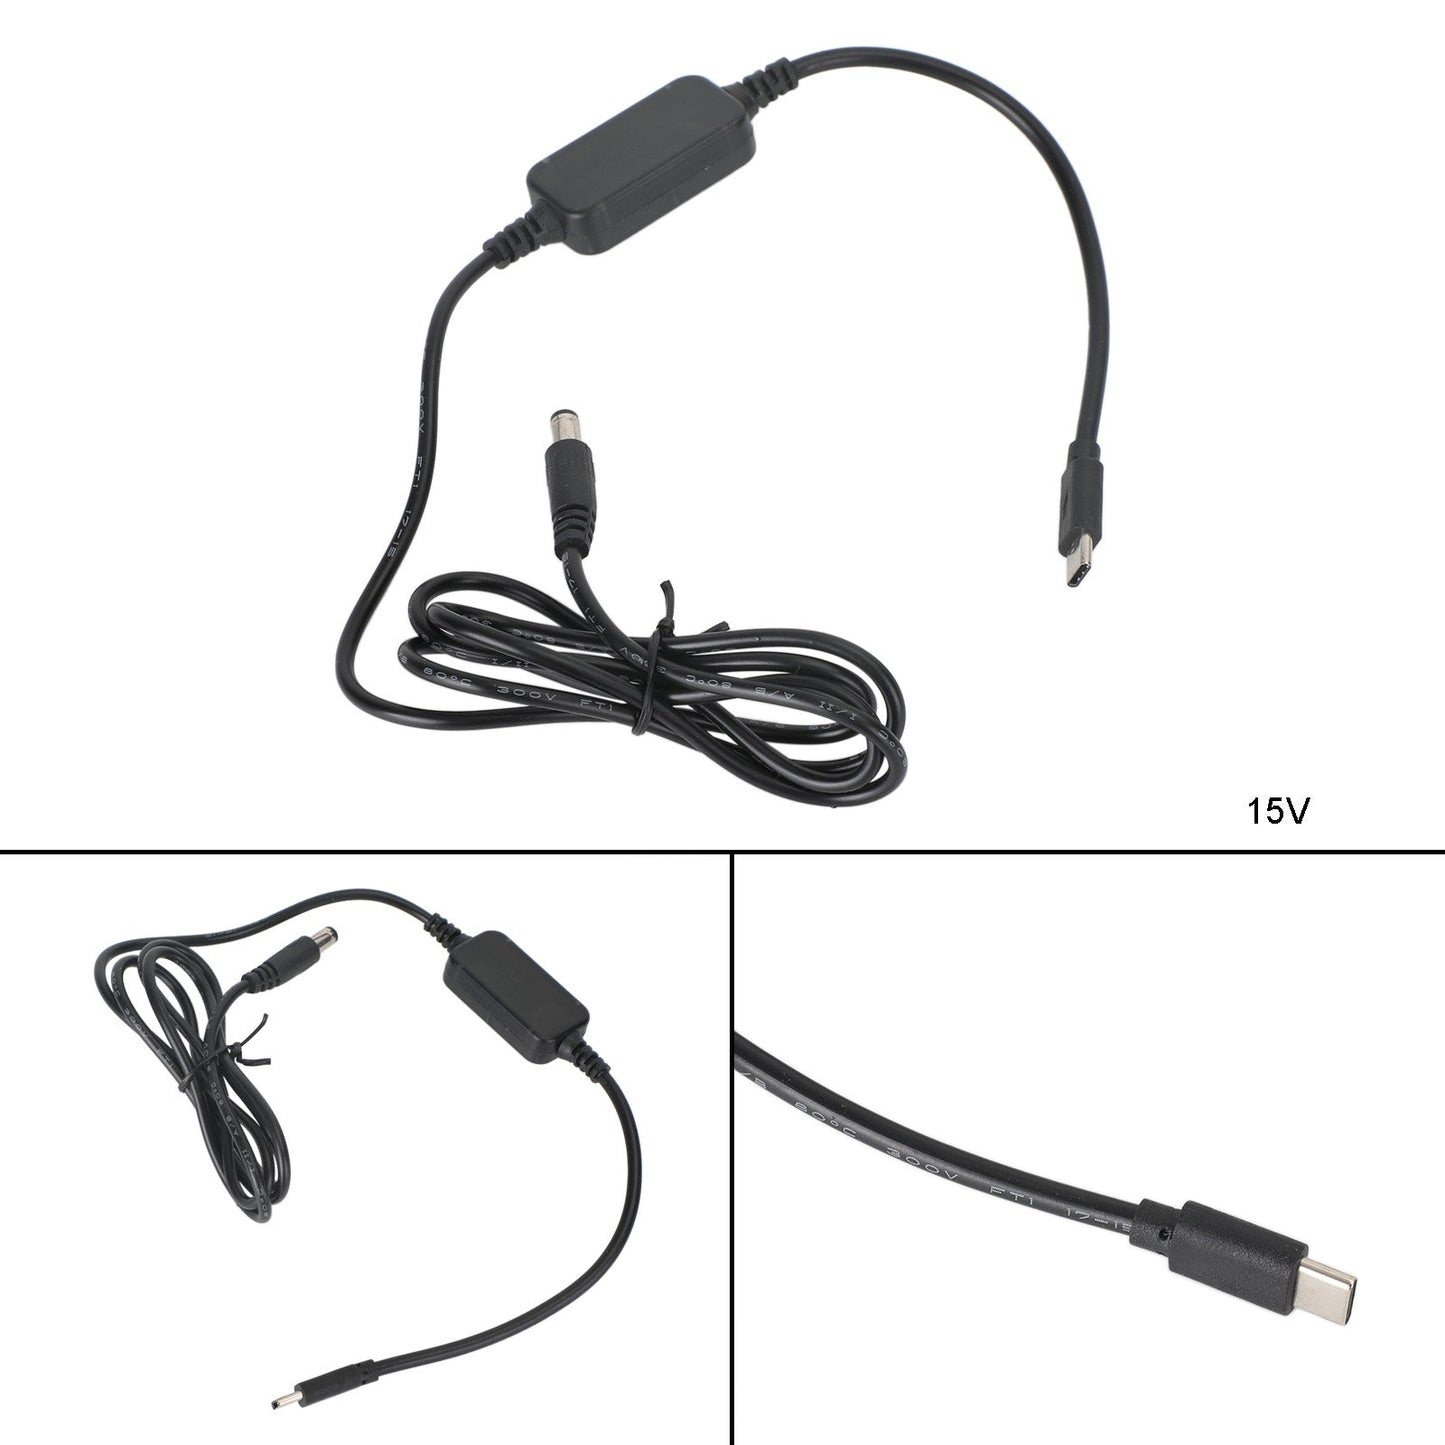 USB auf 9/12/15 V Volt Adapter 5,5 mm * 2,5 mm 1 m 39,37 Zoll PD-Ladekabel